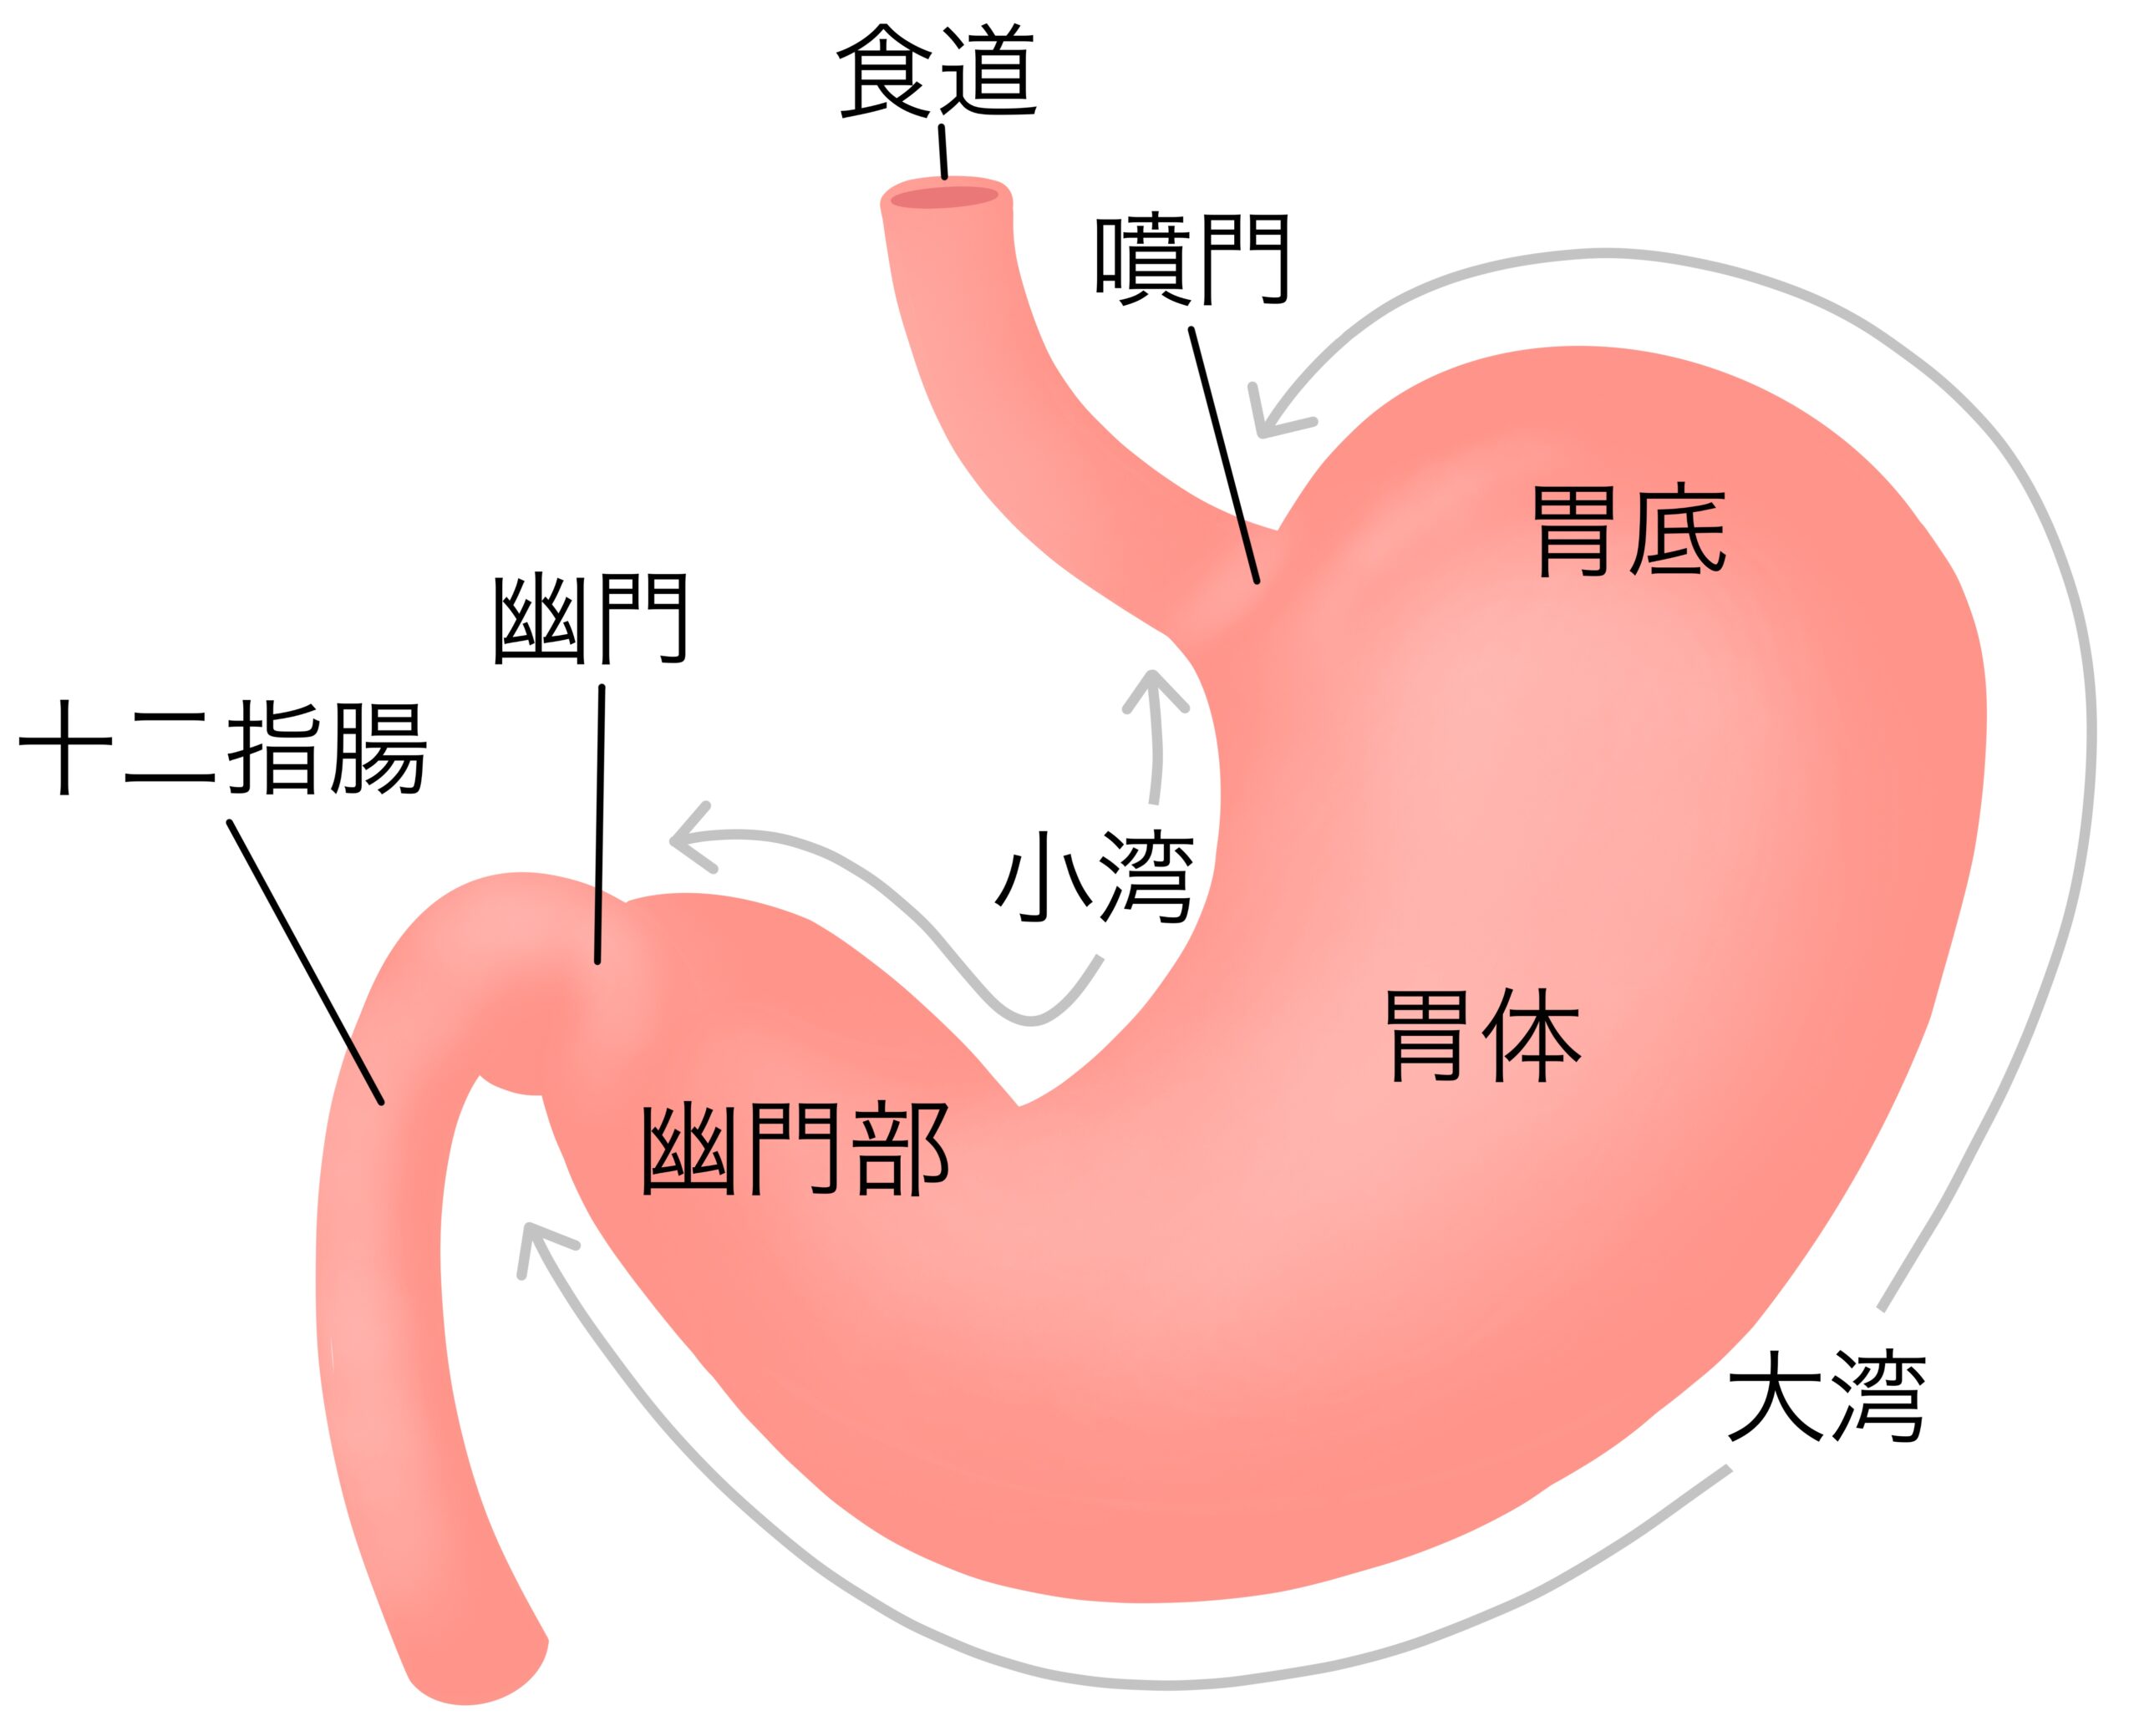 胃の構造を解説するイラスト